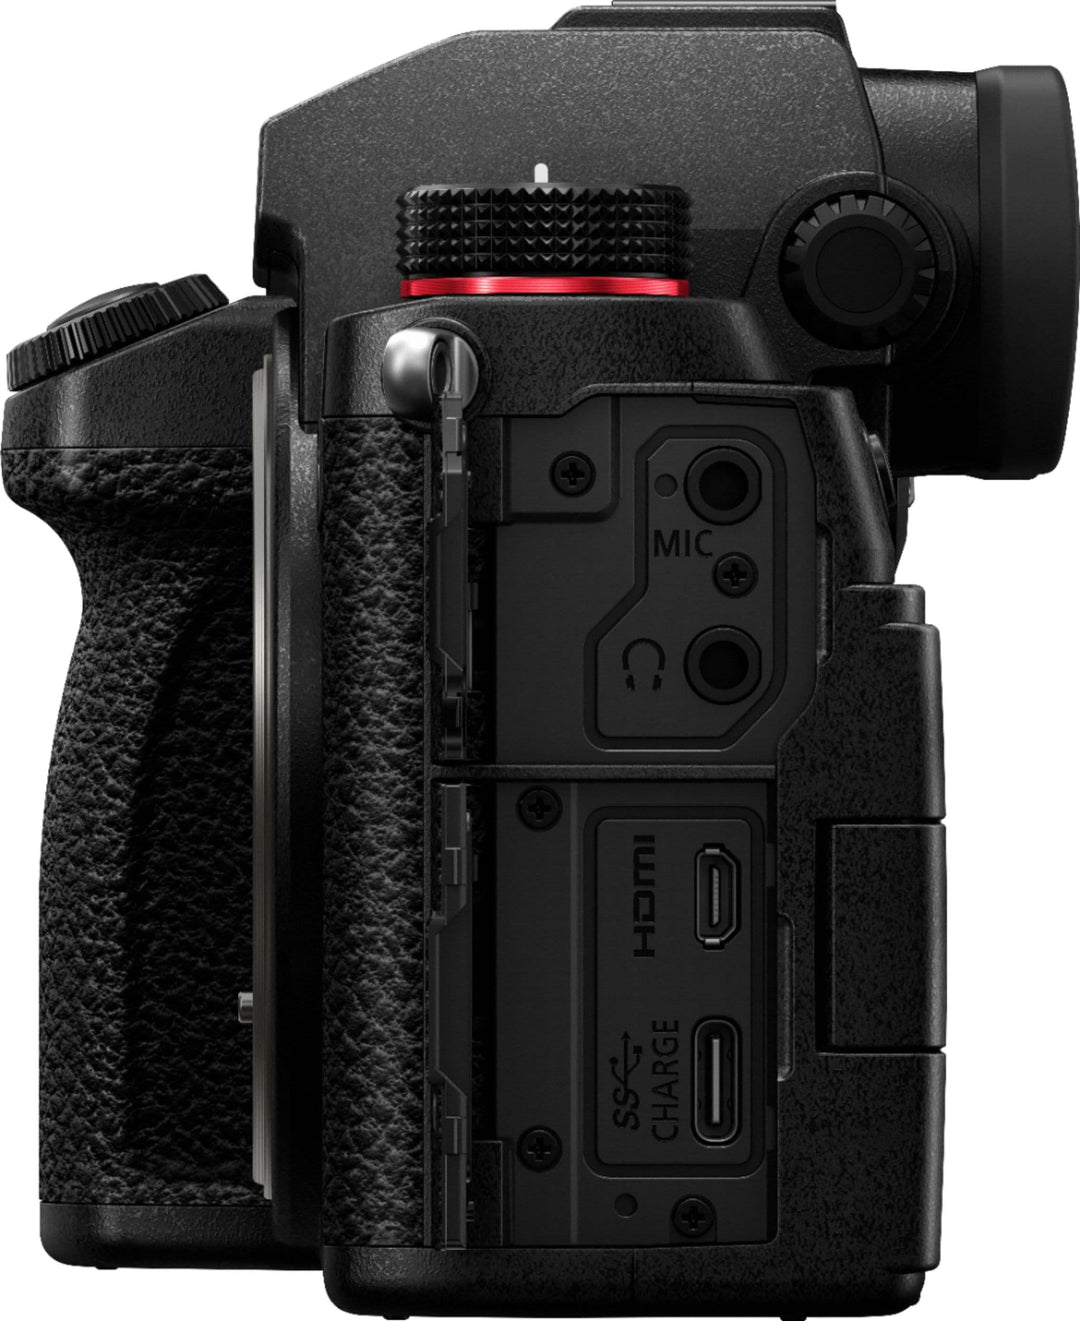 Panasonic - LUMIX S5 Mirrorless Camera Body - DC-S5BODY - Black_4